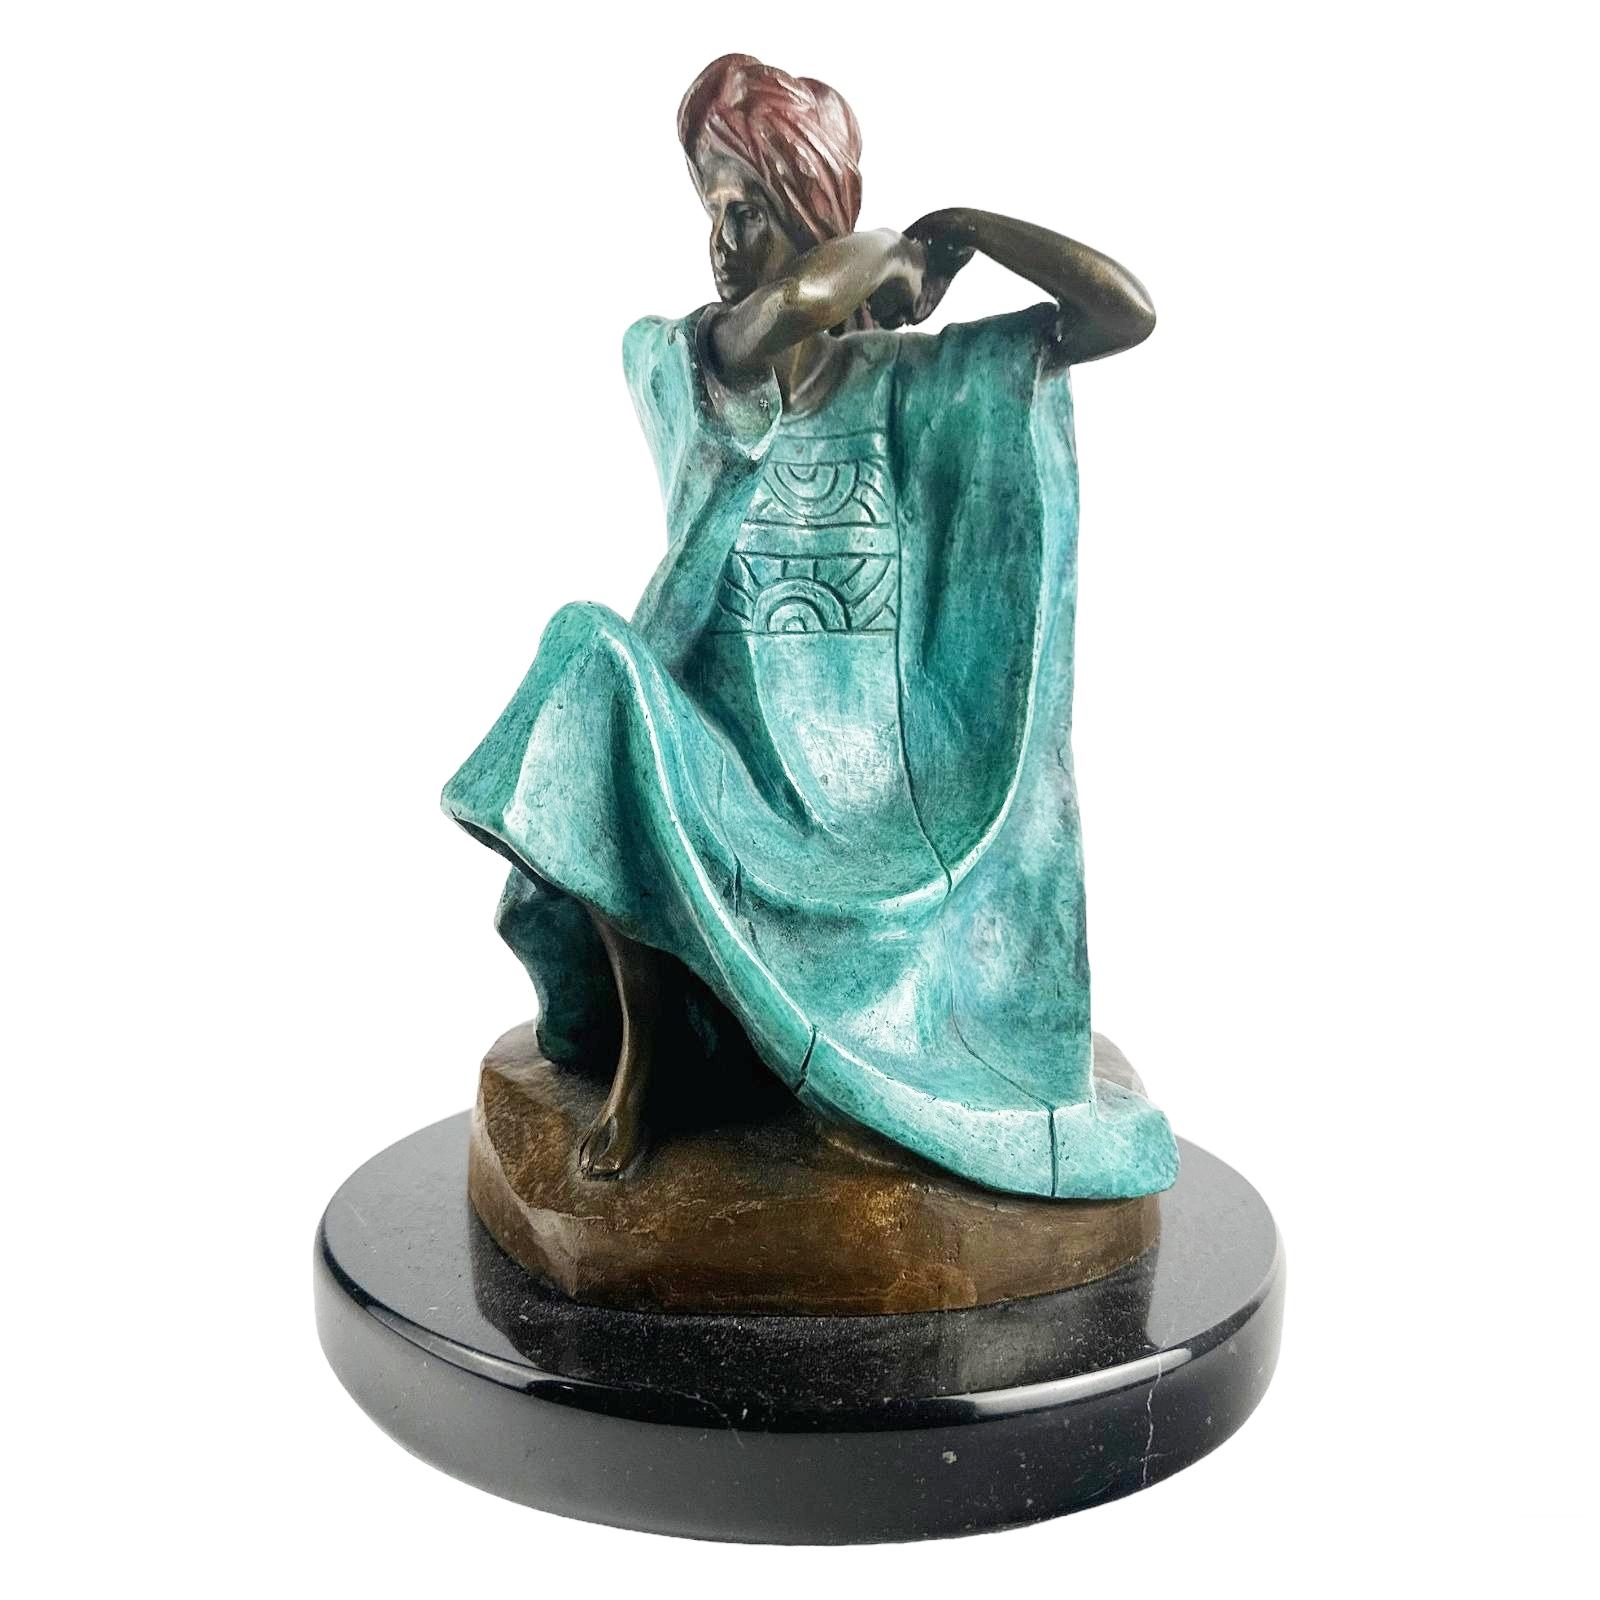 Victor Gutierrez (Mexicain, né en 1950). Statue en bronze peinte à froid en édition limitée. Une œuvre figurative réalisée dans un style moderne représentant une figure féminine assise en costume traditionnel de style Mestizo, avec un turban rouge,